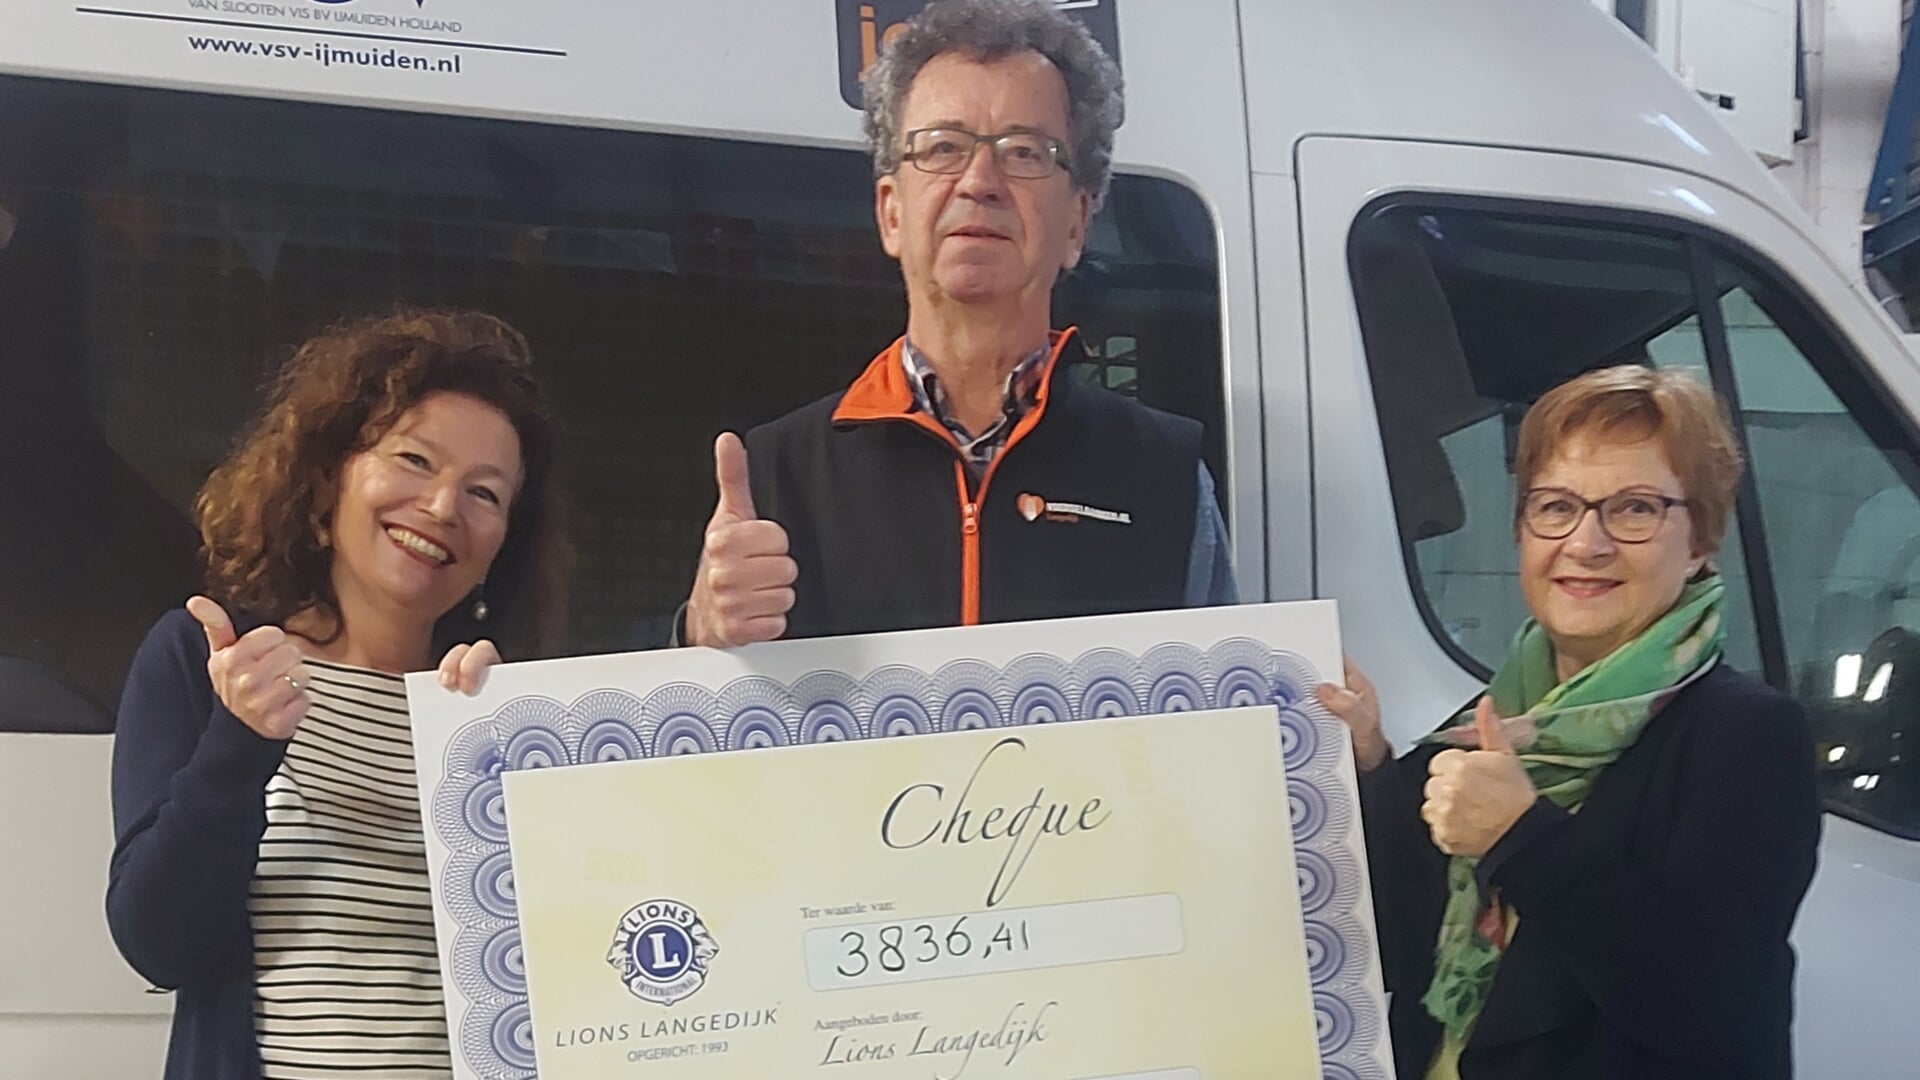 Een cheque ter waarde van € 3836,41 werd door Yvonne van der Spek en Lucie du Quesne overhandigd aan Gerrit Struik, voorzitter van de Voedselbank.  